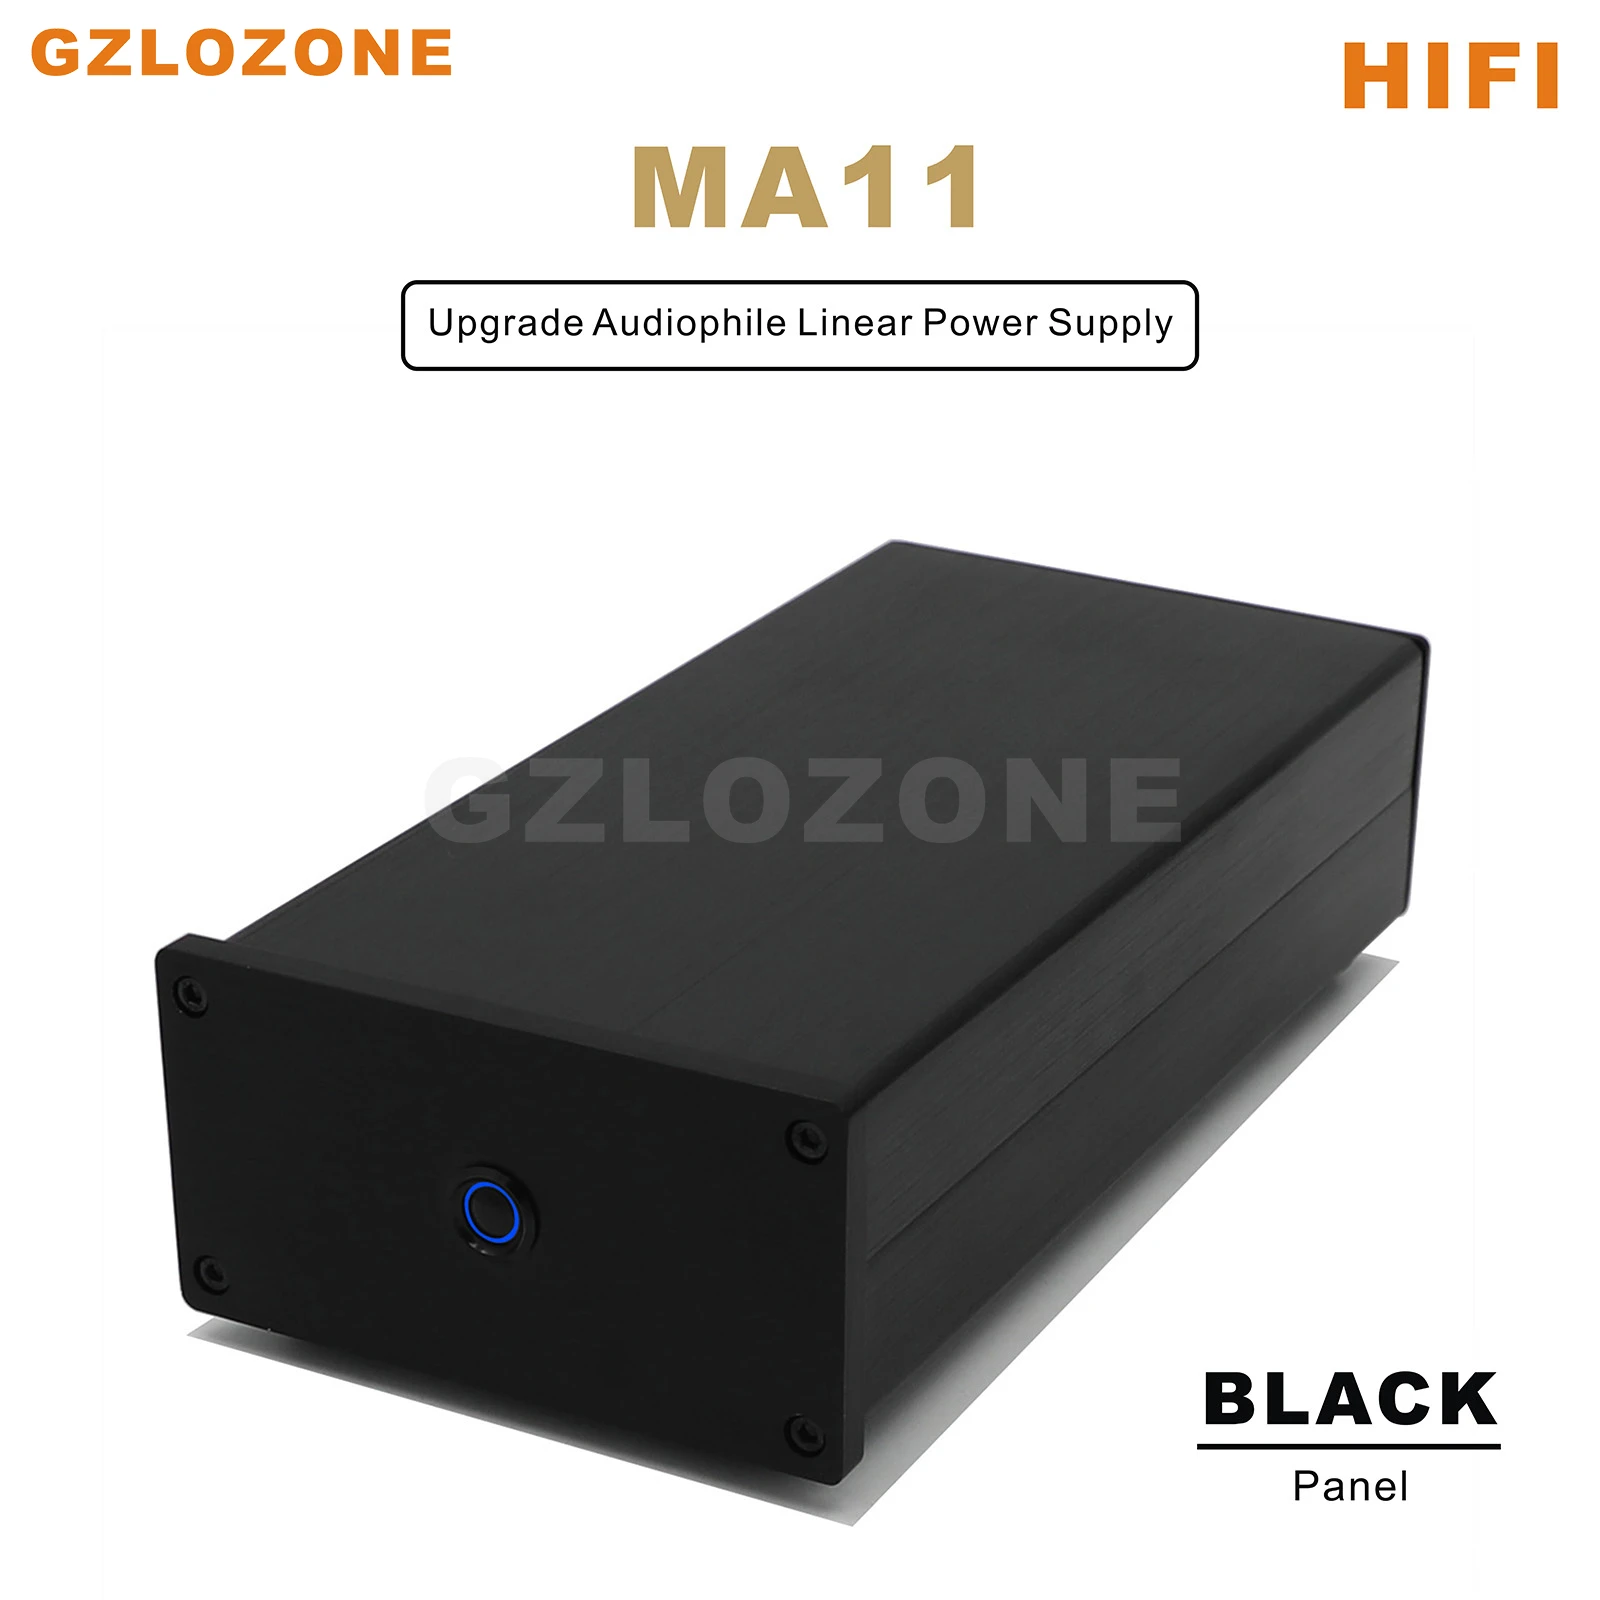 MA11 Hi-Fi малошумящий Аудиофильский линейный источник питания мощностью 25 Вт постоянного тока постоянного тока 5 В/6 В/9 В/12 В/15 В/18 В/19 В (опционально)1